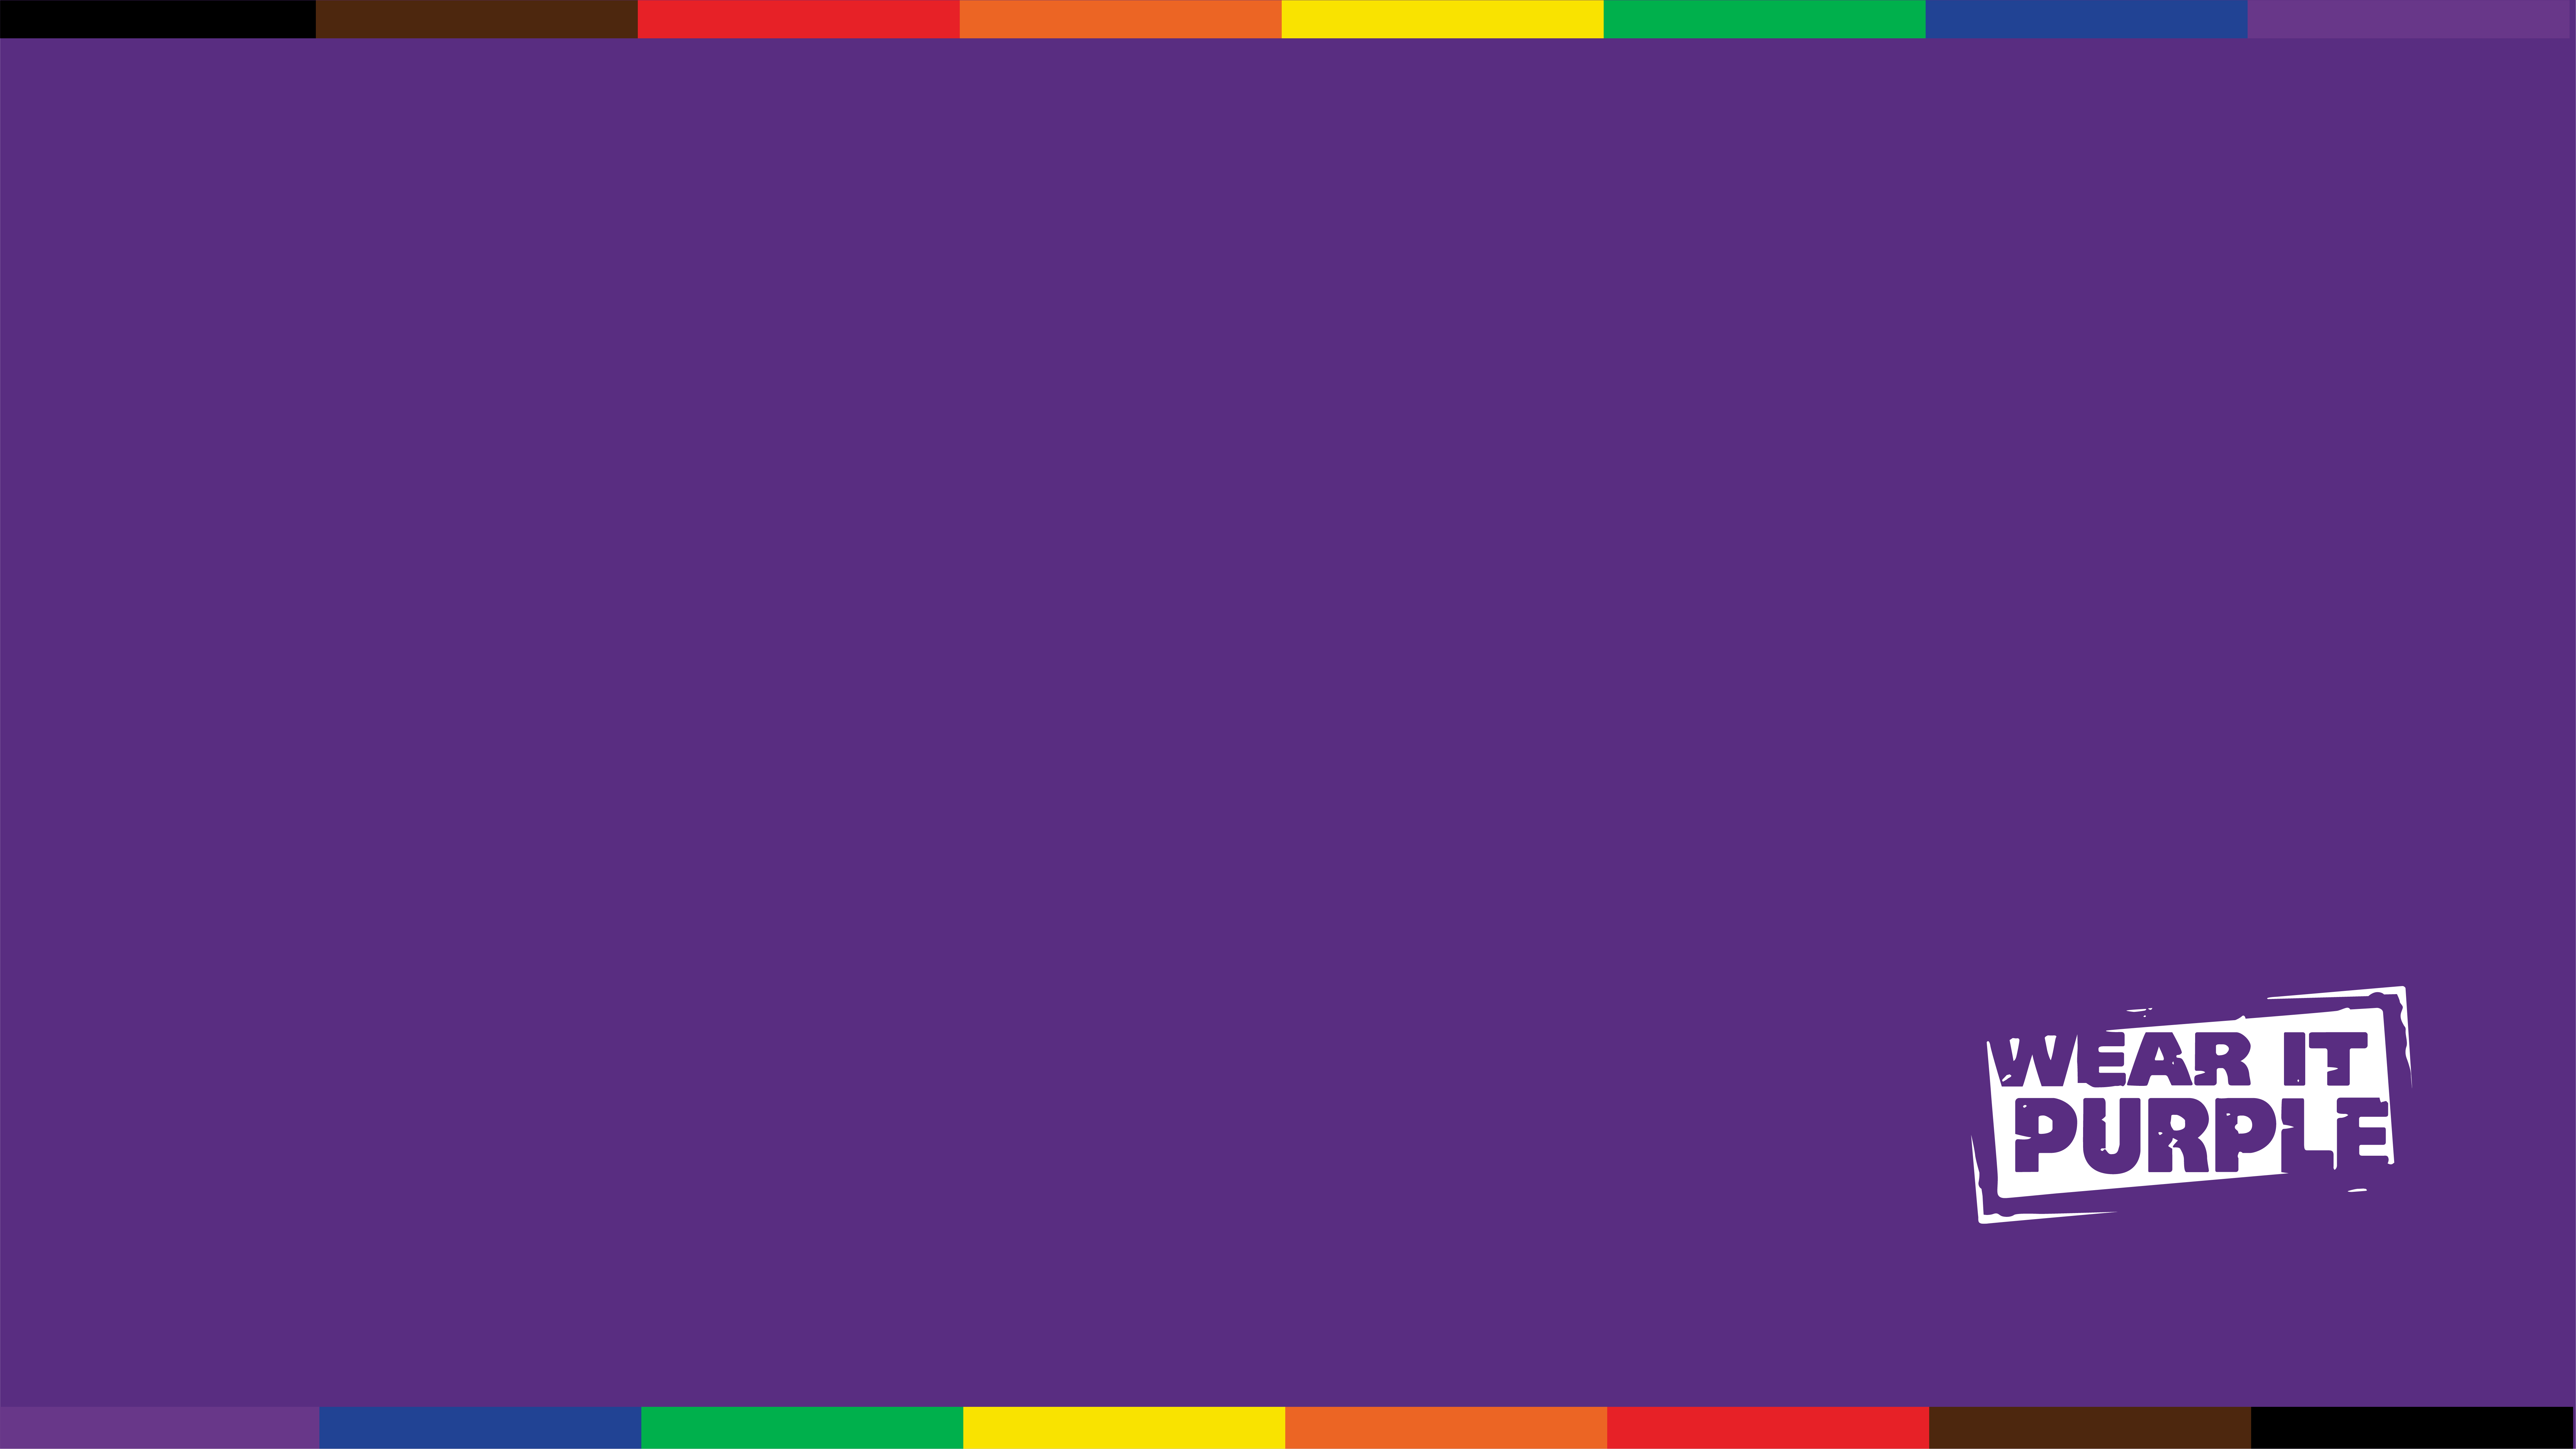 Hãy trang trí cho cuộc gọi của mình thêm sinh động và ý nghĩa với nền tảng Wear it Purple cho đội nhóm. Cùng nhau tạo nên một không gian chia sẻ yêu thương và chấp nhận cho cộng đồng LGBT.